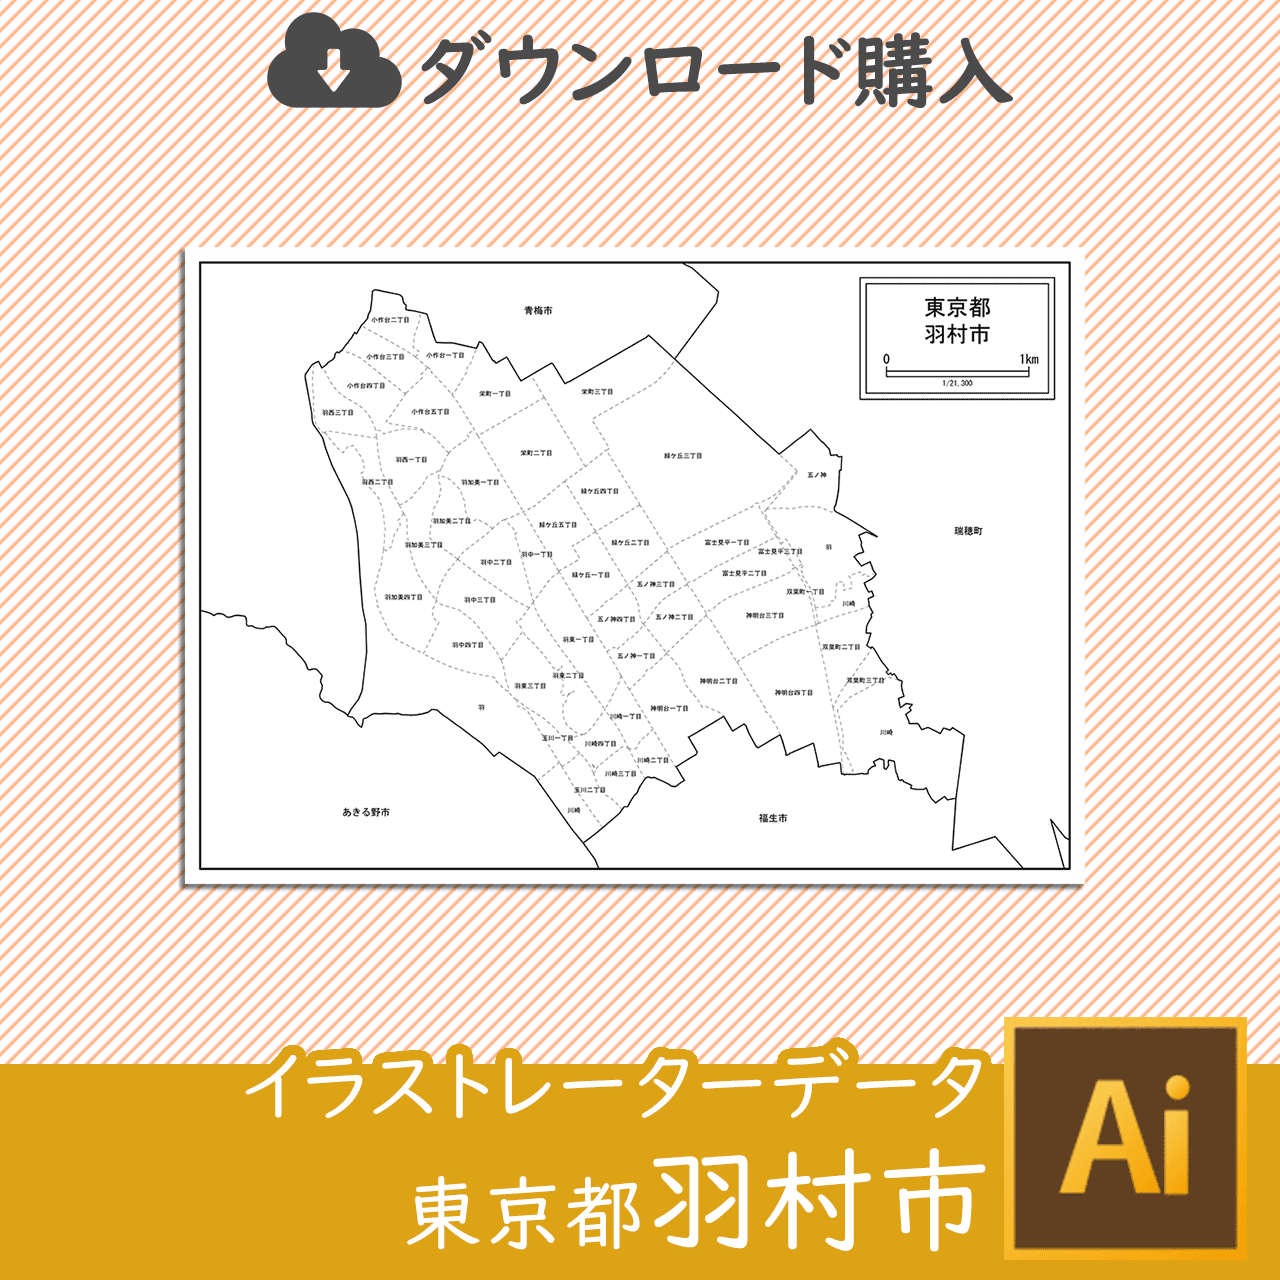 羽村市の白地図のサムネイル